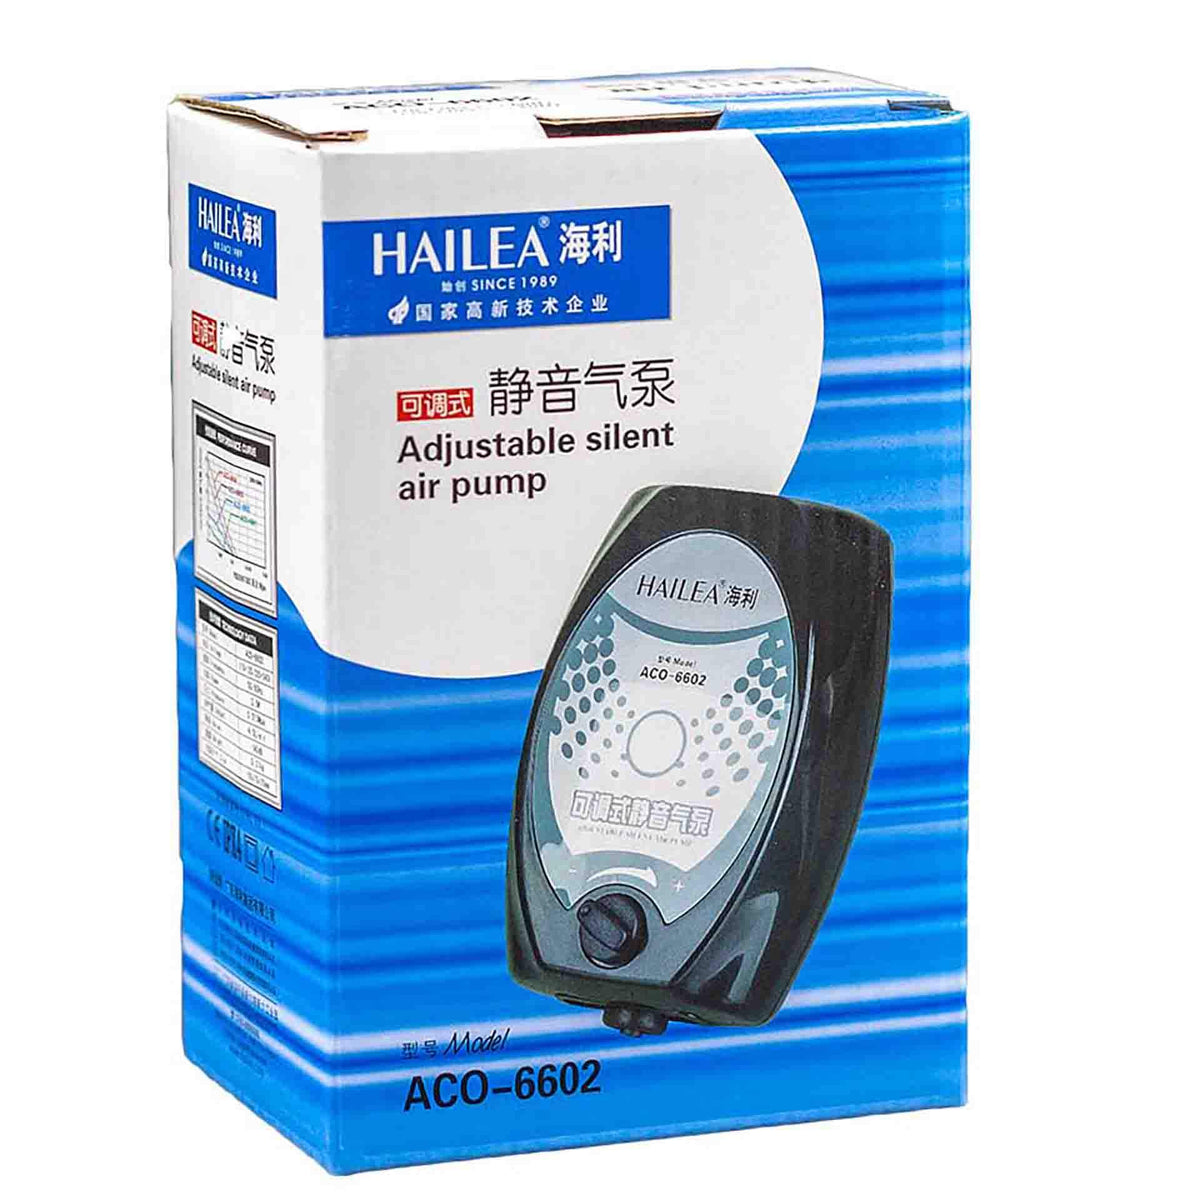 Hailea 66 Series Adjustable Silent Air Pump - 4L/min